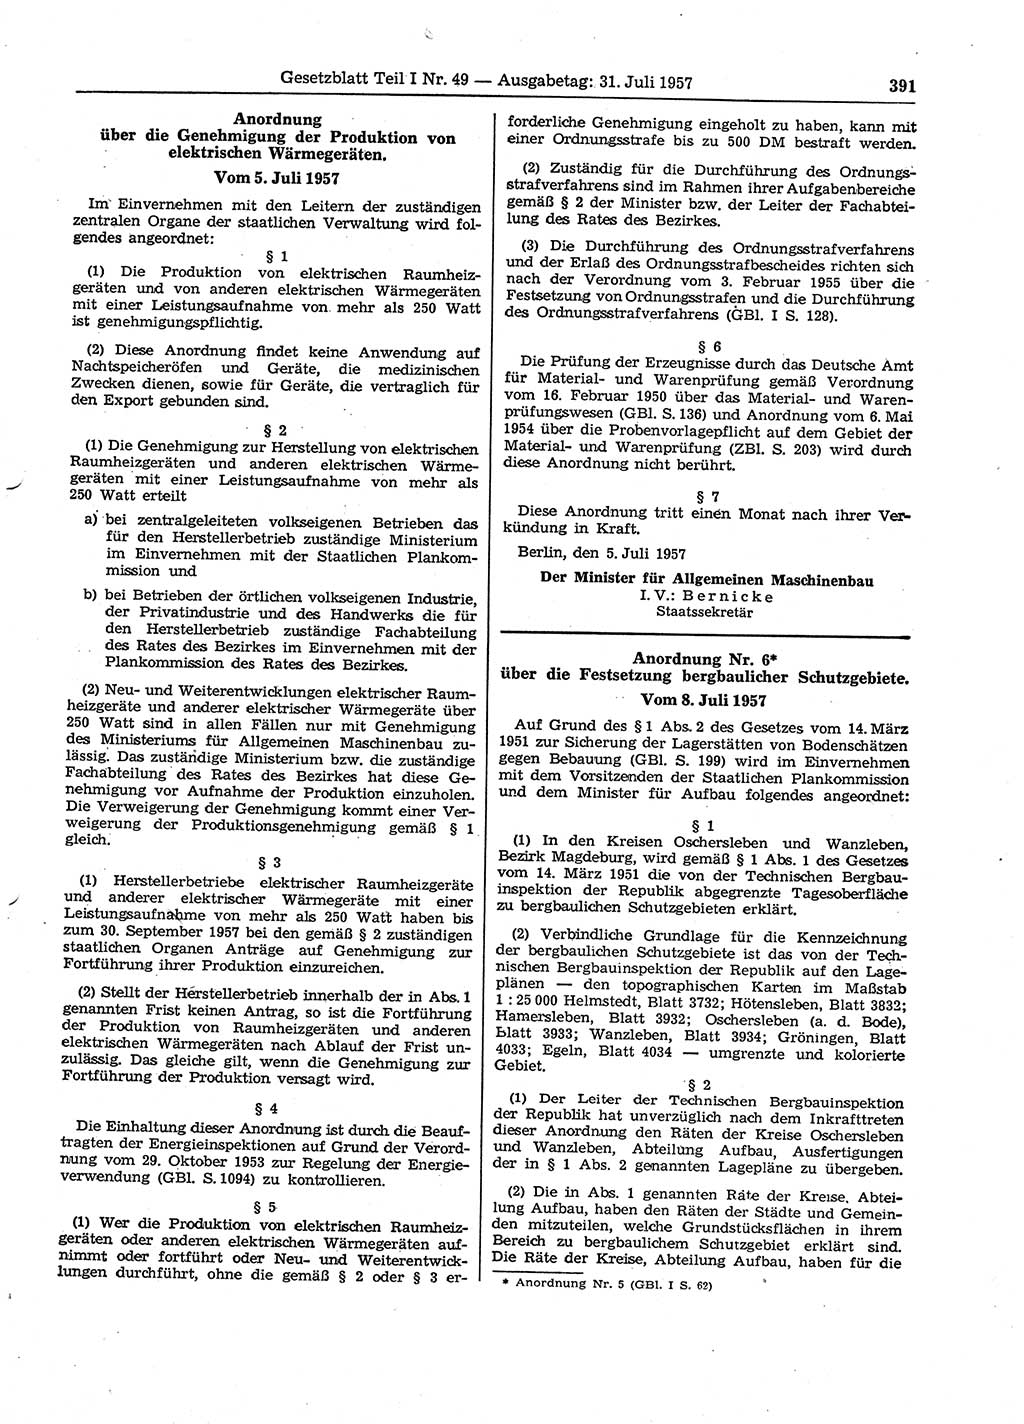 Gesetzblatt (GBl.) der Deutschen Demokratischen Republik (DDR) Teil Ⅰ 1957, Seite 391 (GBl. DDR Ⅰ 1957, S. 391)